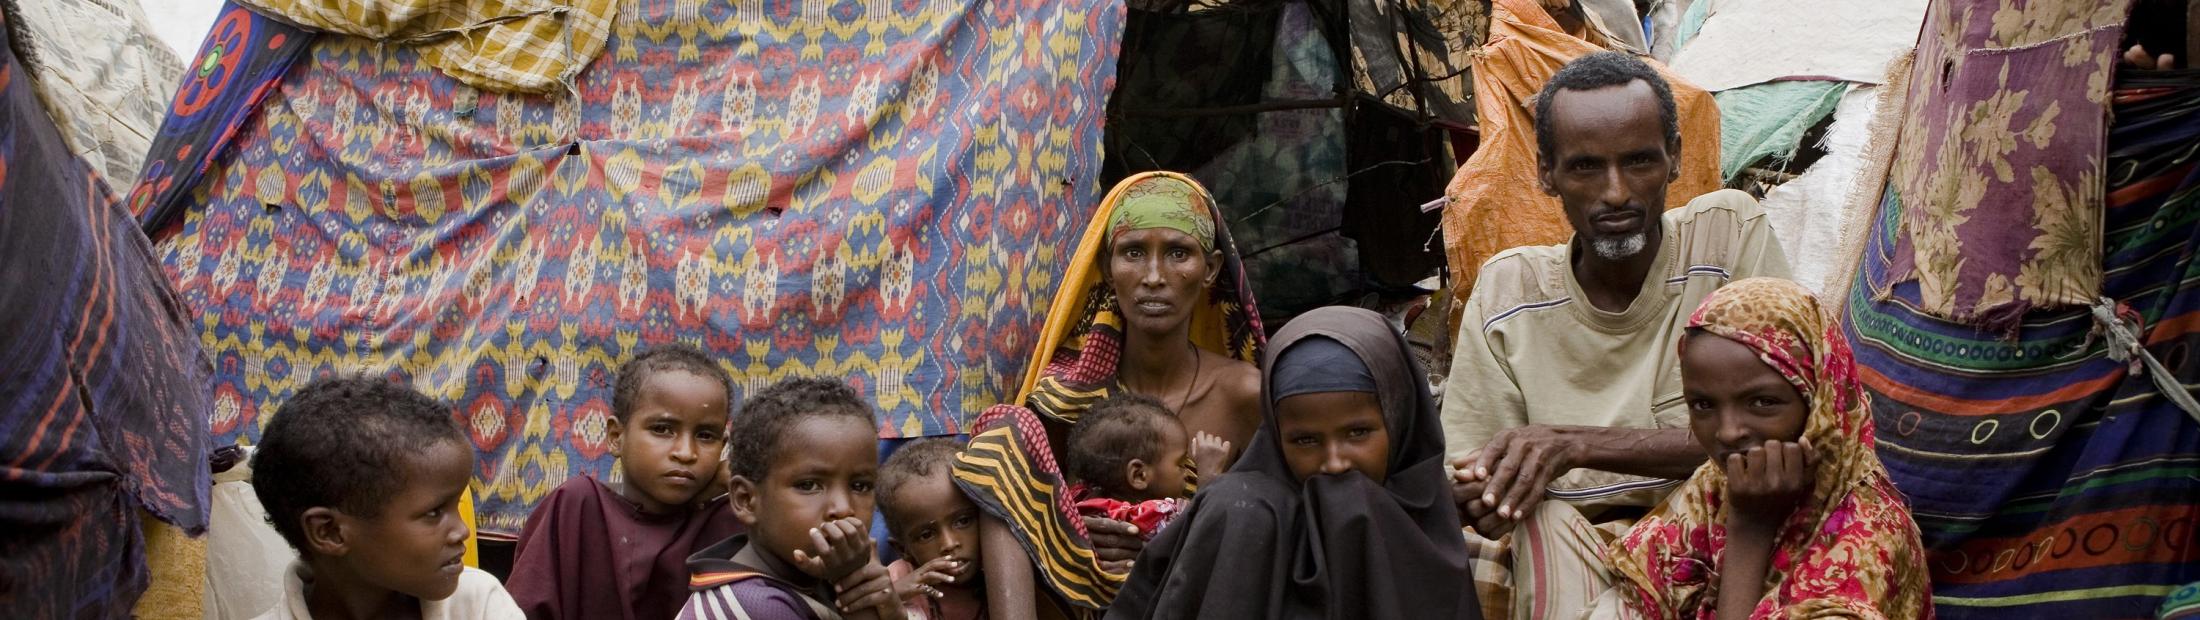 Llegar al campo de refugiados de Dadaab: la historia de una familia somalí